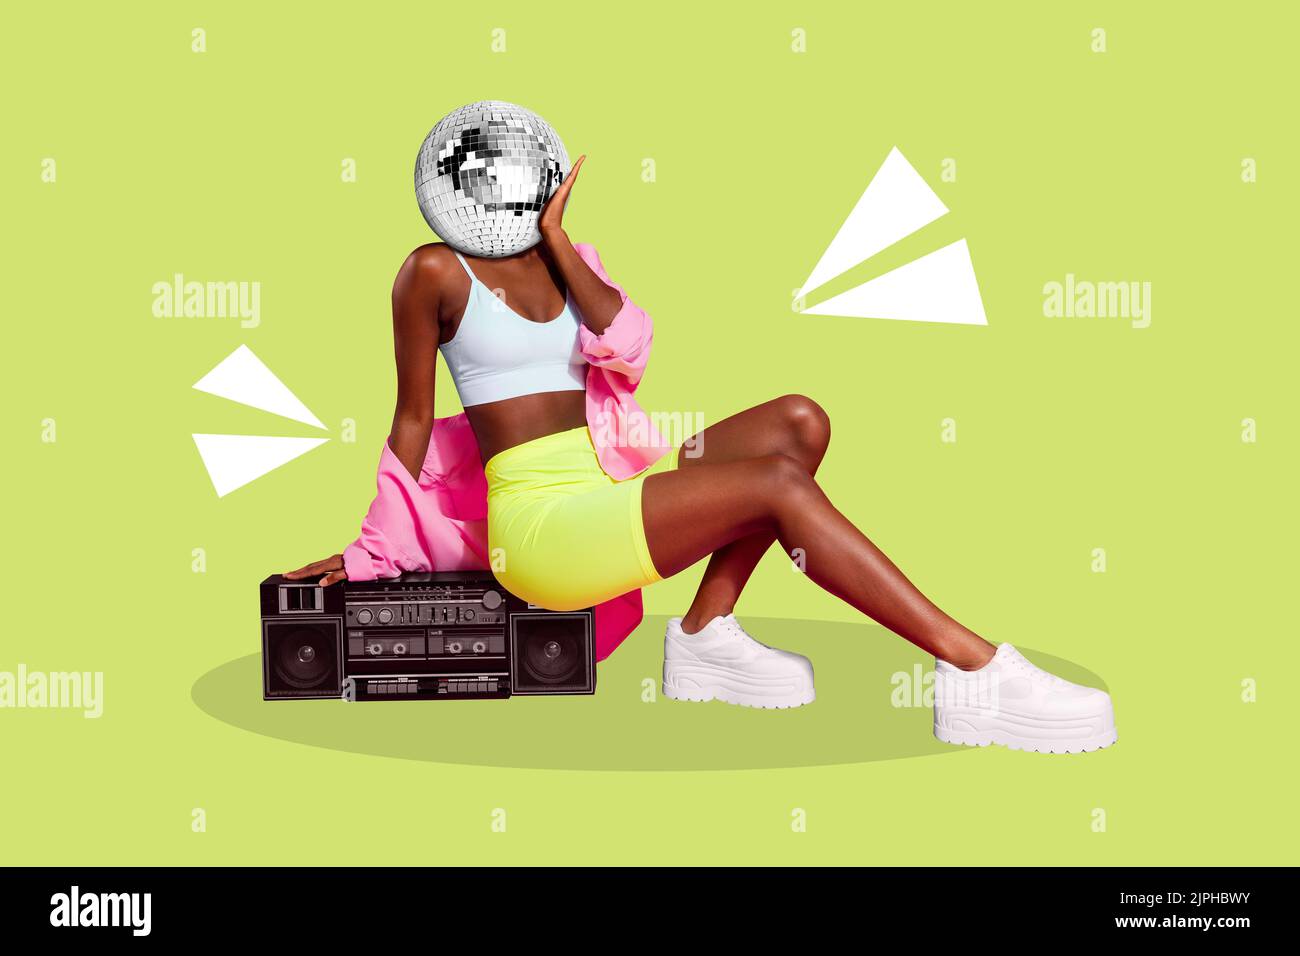 Póster collage de dama sentarse en boombox bola disco en lugar de la cabeza aislado en el dibujo de fondo de color verde Foto de stock